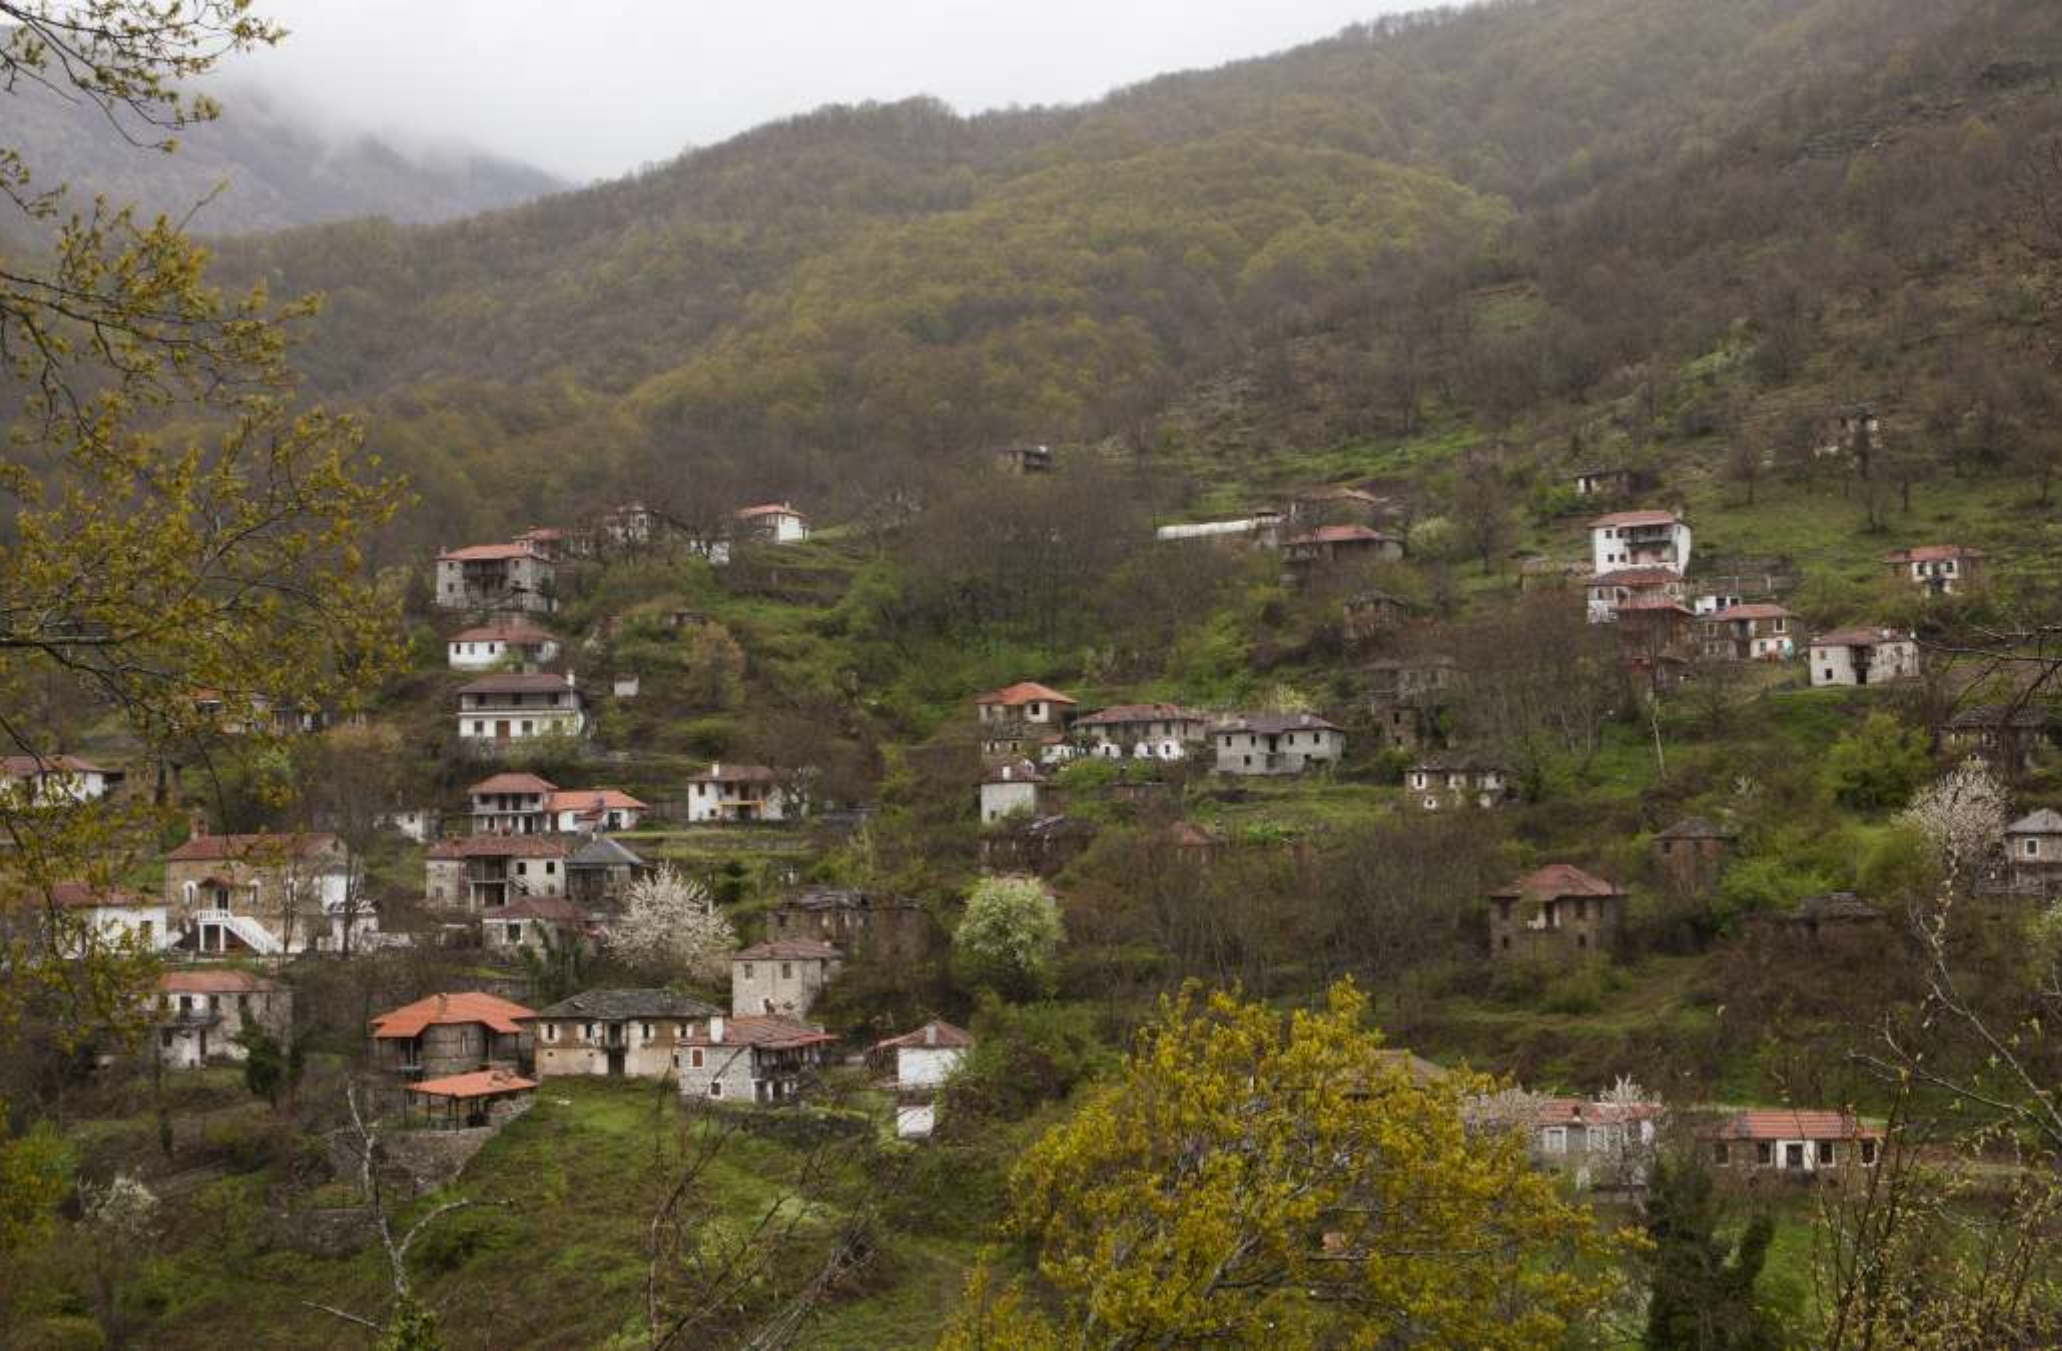 Μόρνα: Το στοιχειωμένο χωριό οι θρύλοι και το επτασφράγιστο μυστικό των κατοίκων που θυμίζει θρίλερ